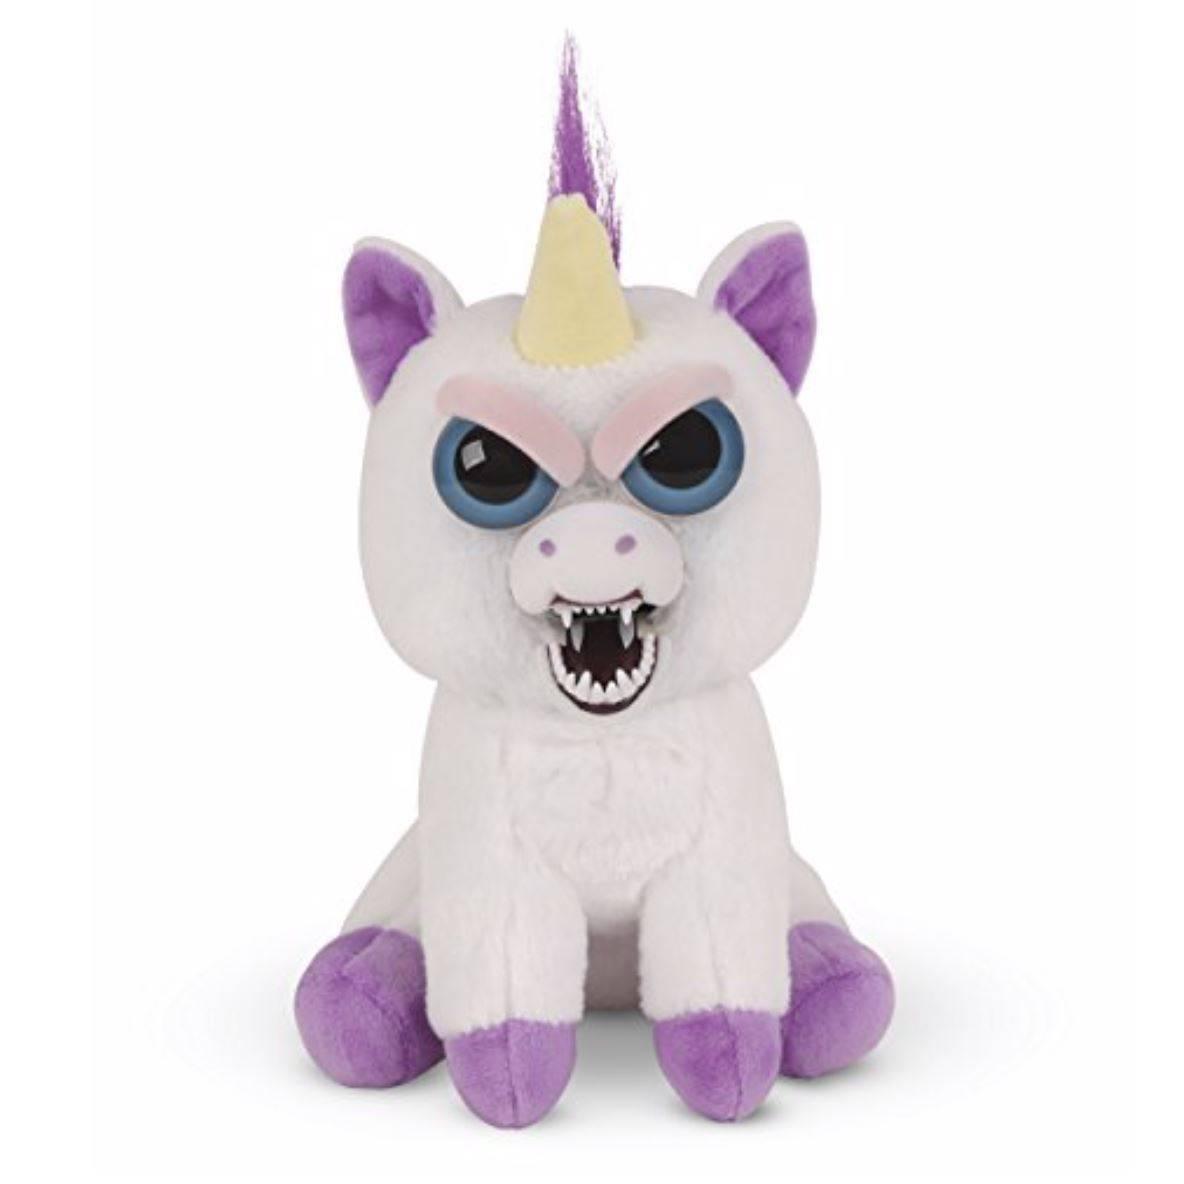 Unicorn plush Scary - A Unicorn